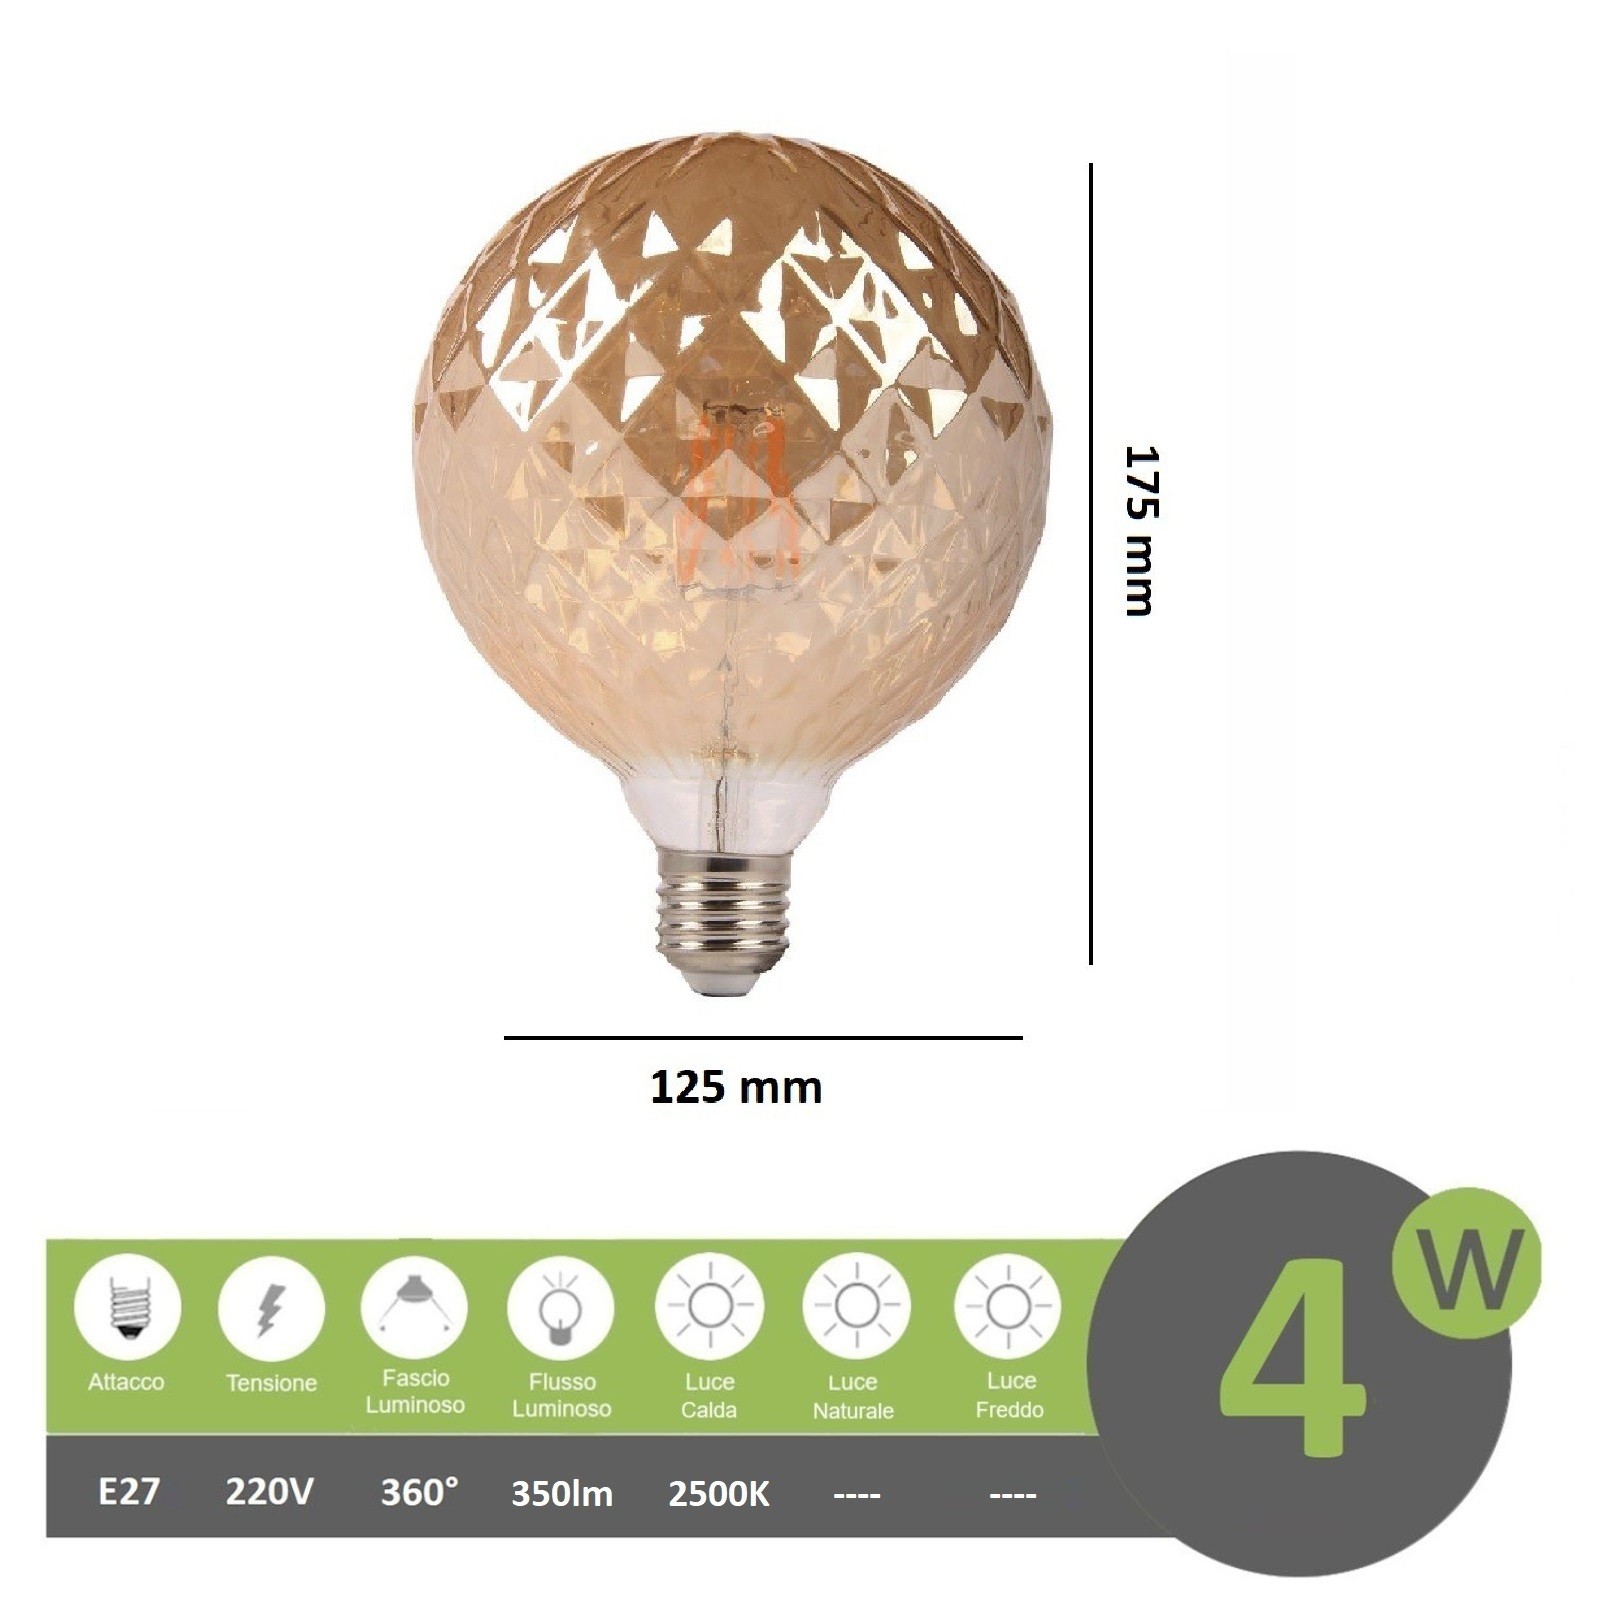 https://www.epianeta.it/5969/lampadina-filamento-led-attacco-grande-e27-4w-sfera-globo-ambra-effetto-cristallo-lampada-decorativa-vintage-luce-calda.jpg